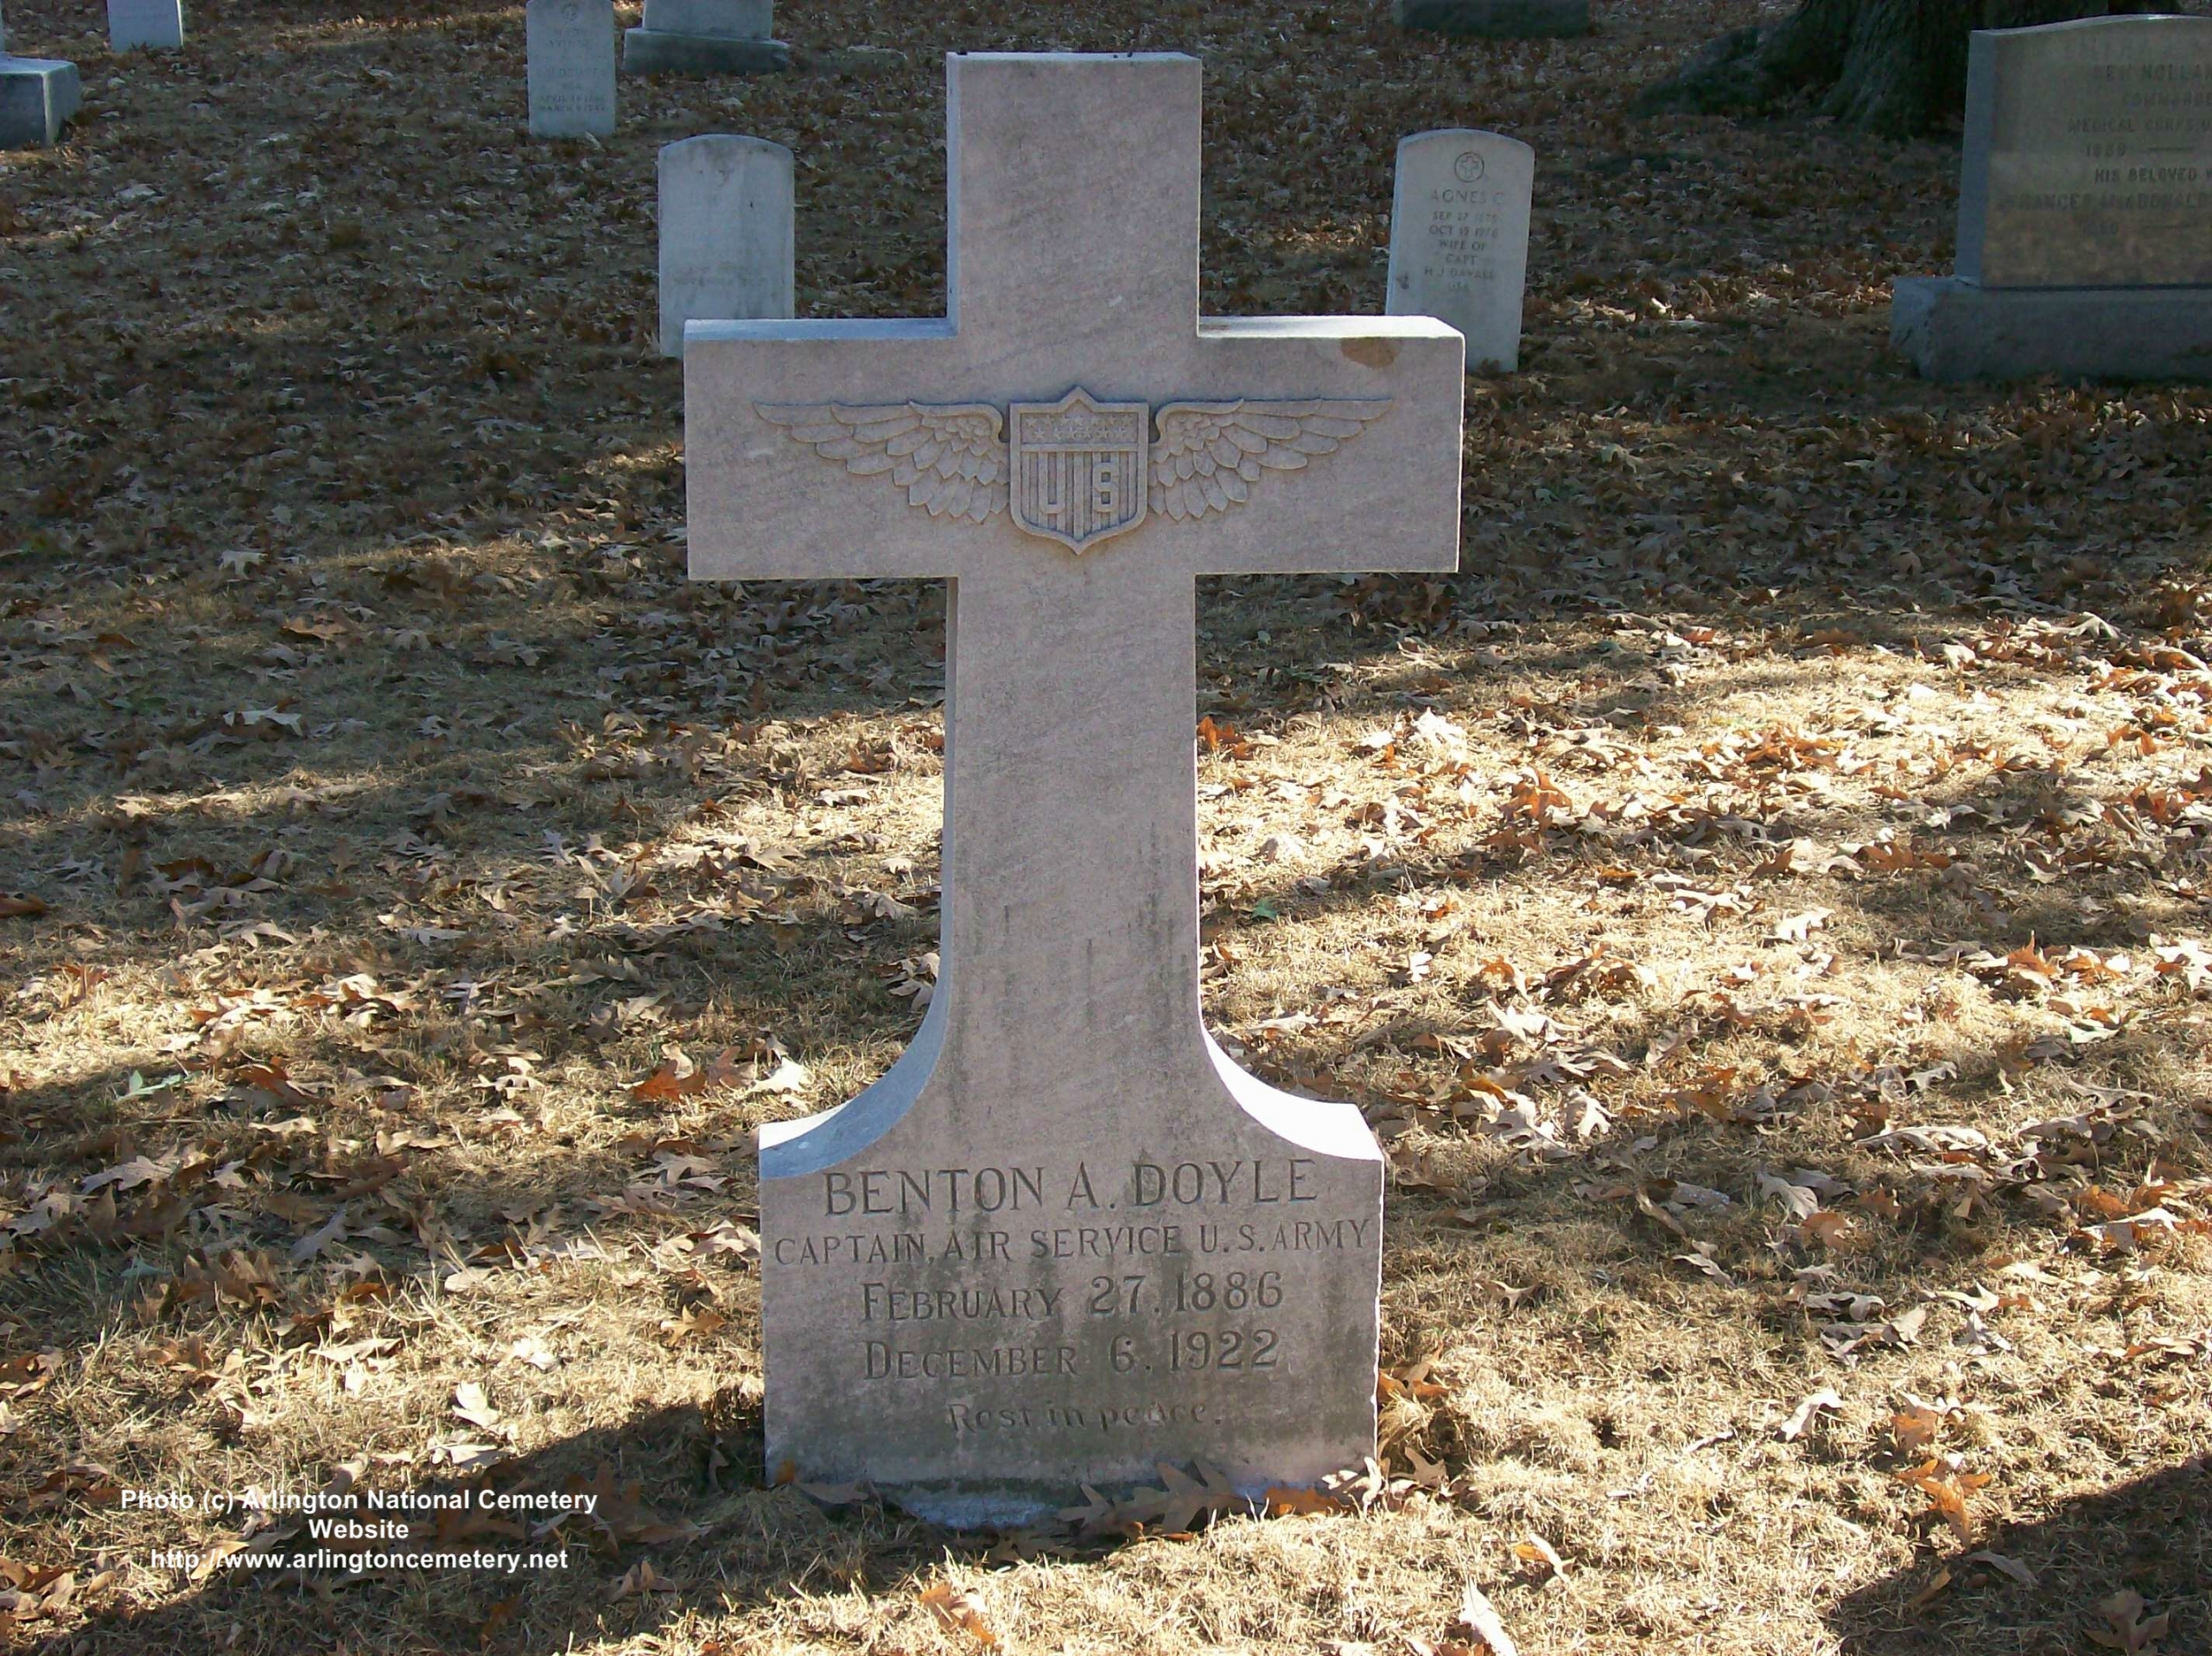 badoyle-gravesite-photo-october-2007-001